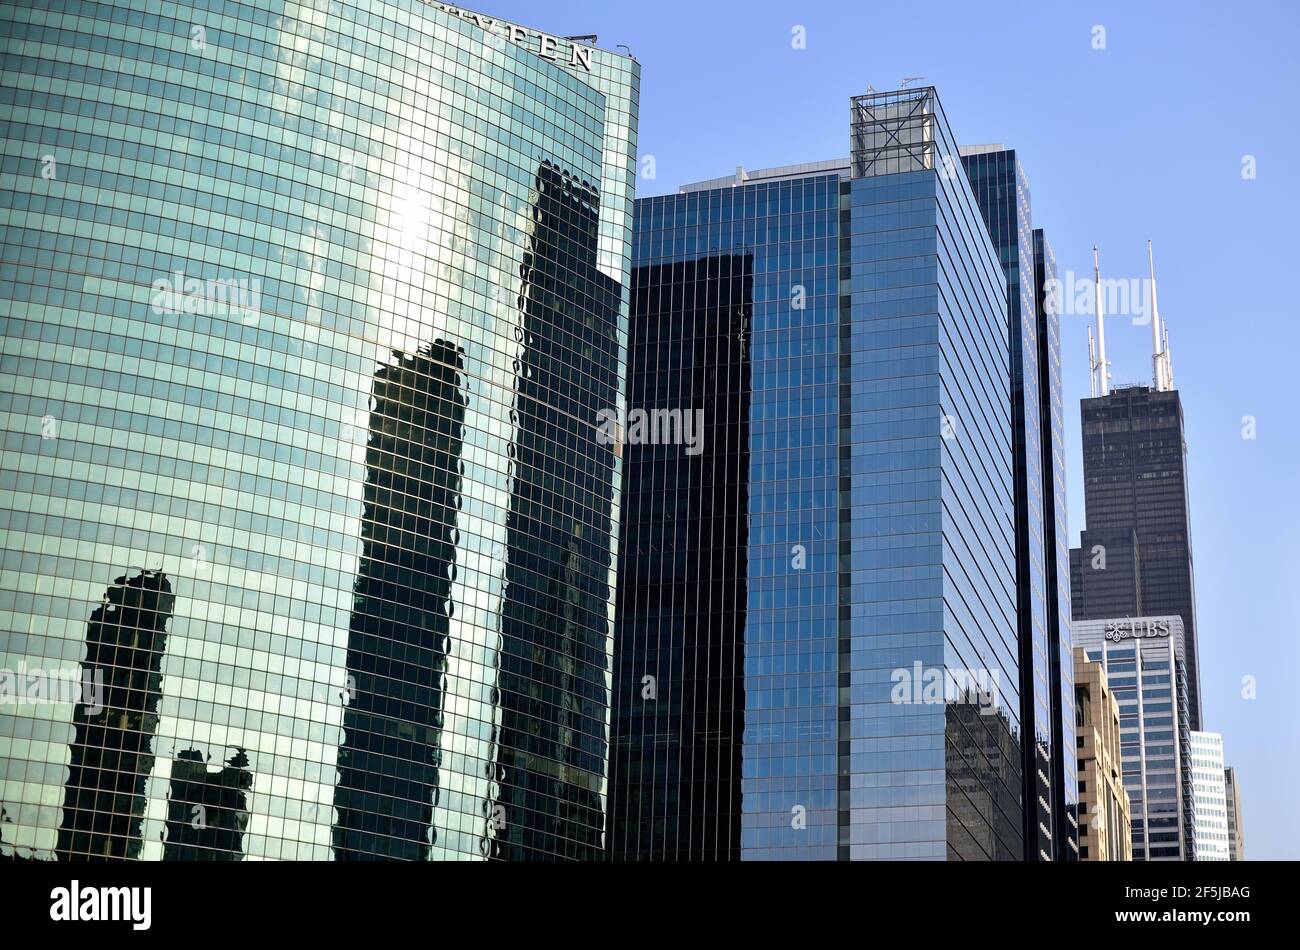 Les bâtiments en acier et en verre ombré de Chicago, Illinois, contrastent avec le bâtiment le plus haut de Chicago, la Willis Tower à hued noires. Banque D'Images